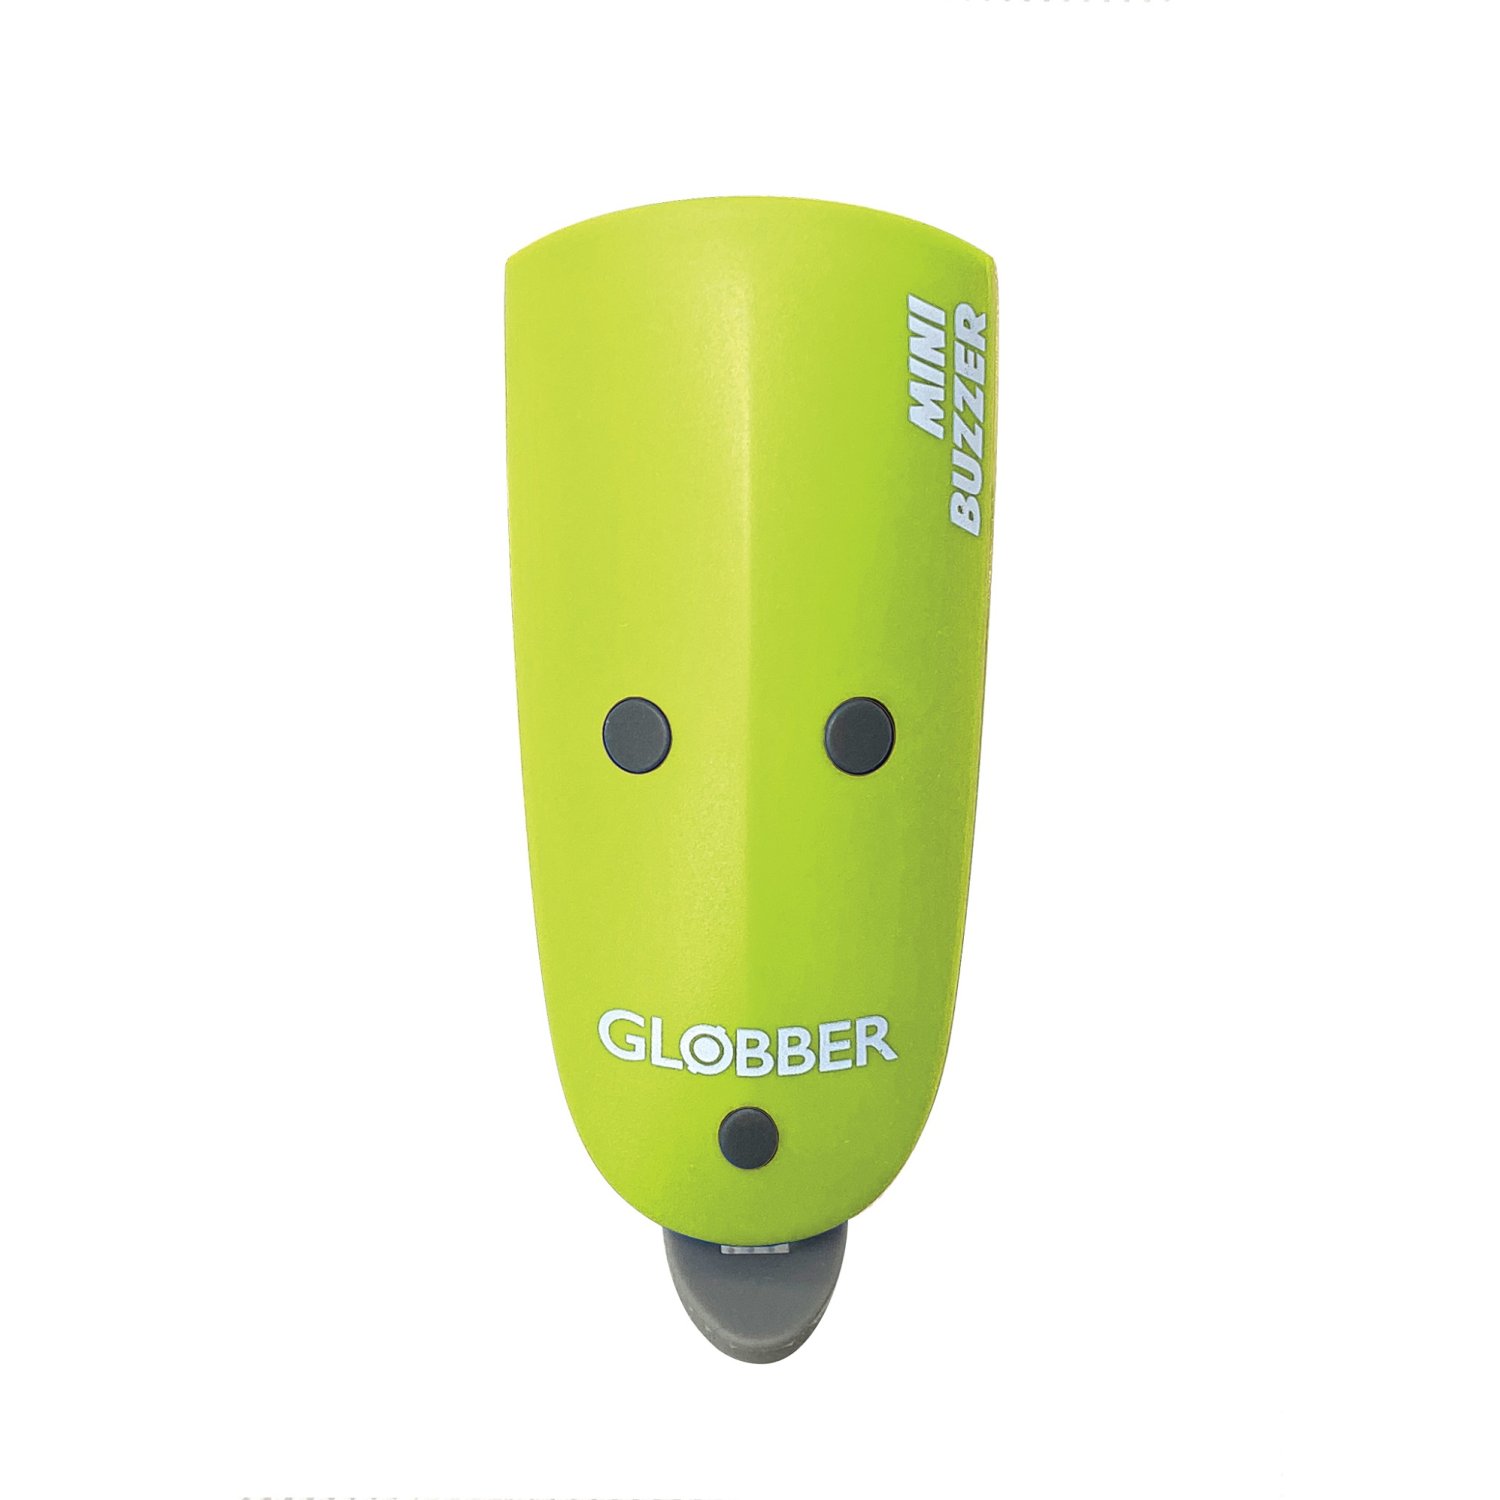 Звонок-фонарик велосипедный Globber MINI BUZZER, зеленый, 530-106 globber электронный сигнал globber mini buzzer зеленый